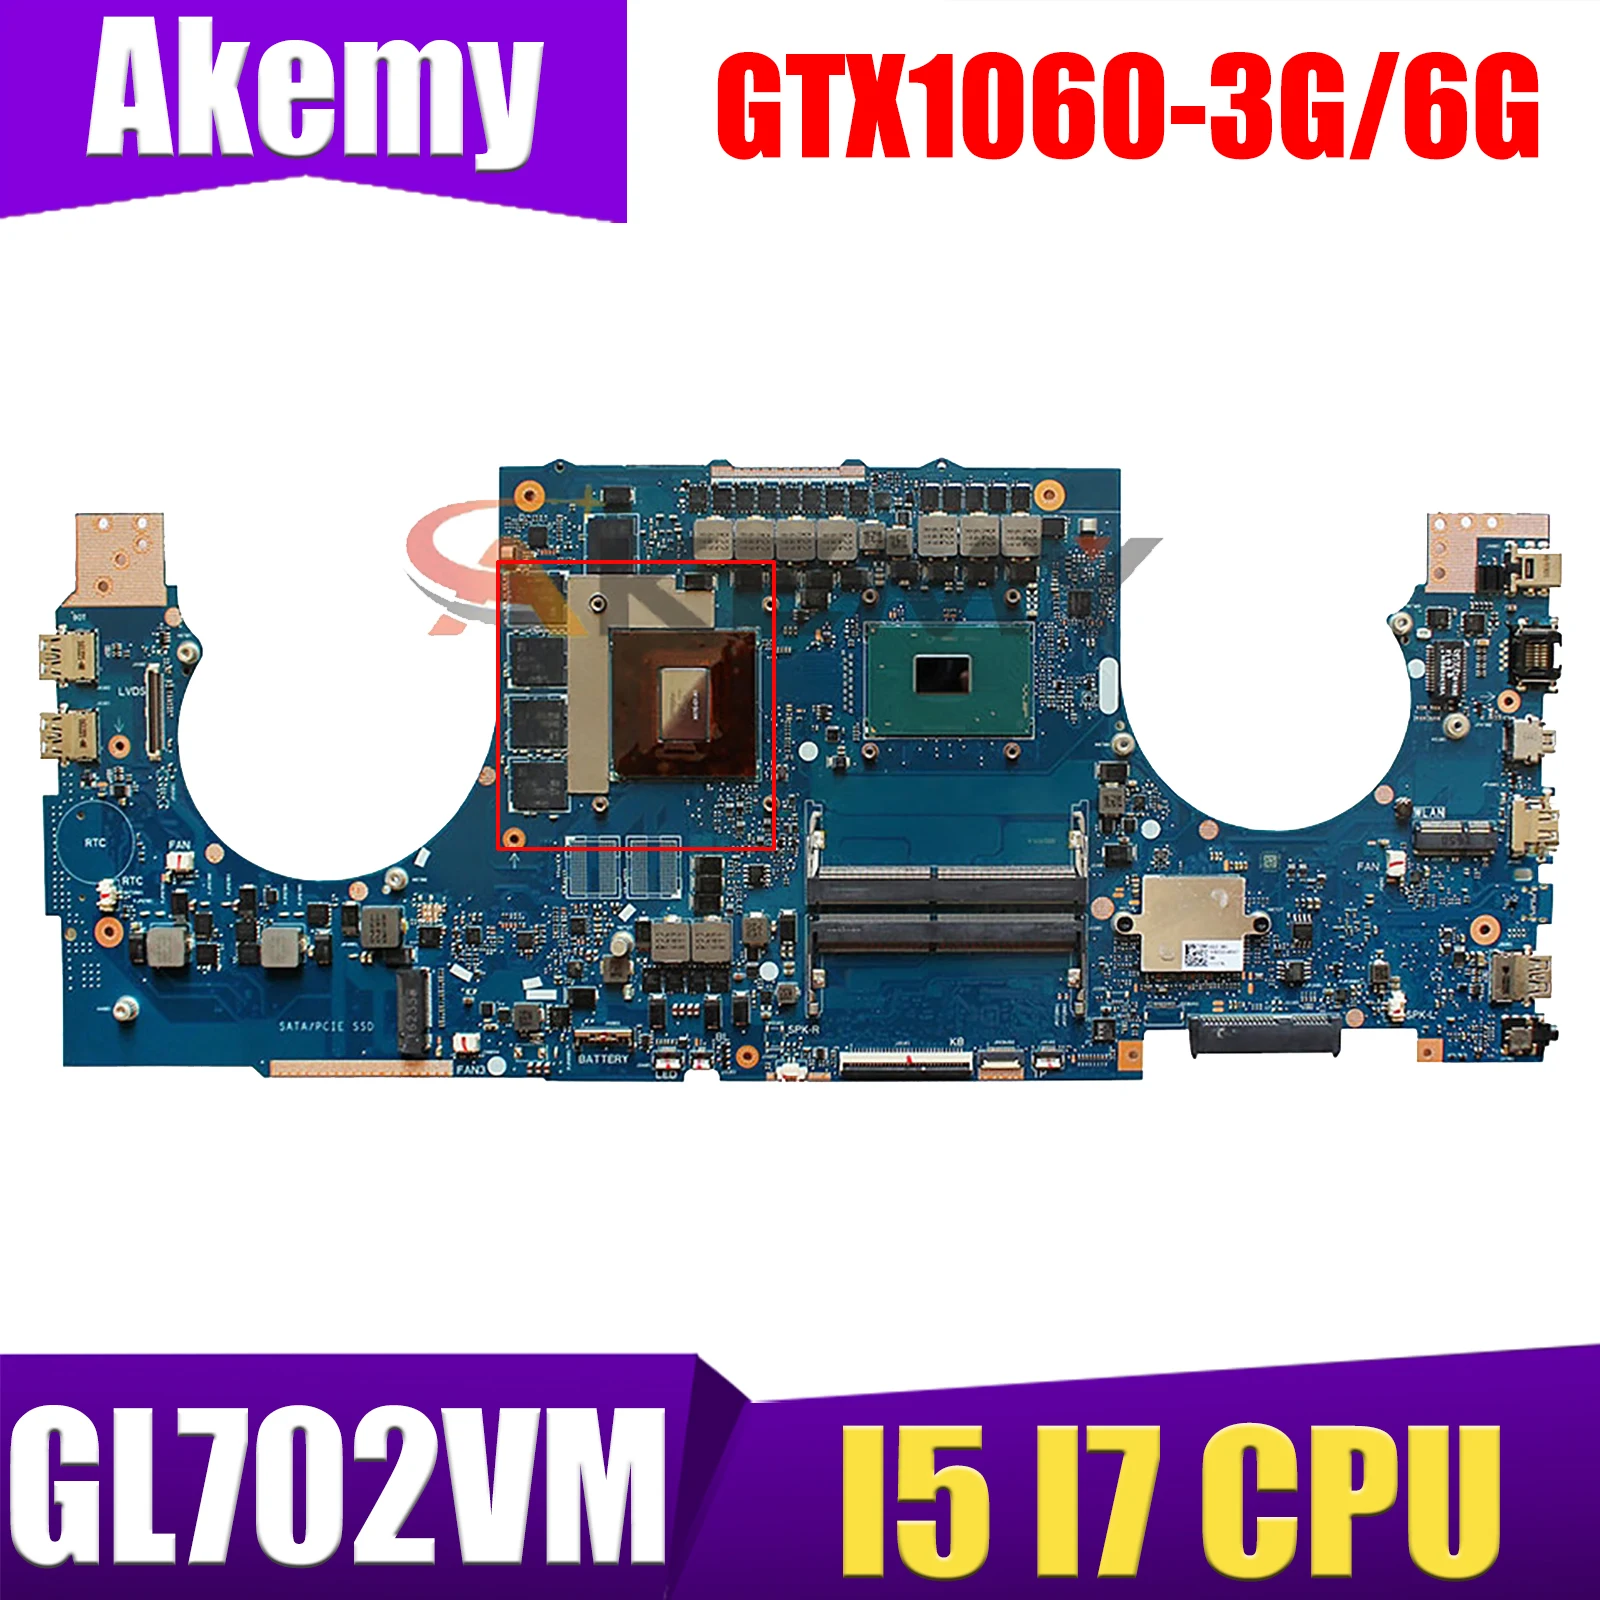 

GL702VM Laptop Motherboard for ASUS FX70V GL702VMK GL702VSK GL702VS GL702VML GL702 Mainboard I5 I7 CPU GTX1060-3G/6G